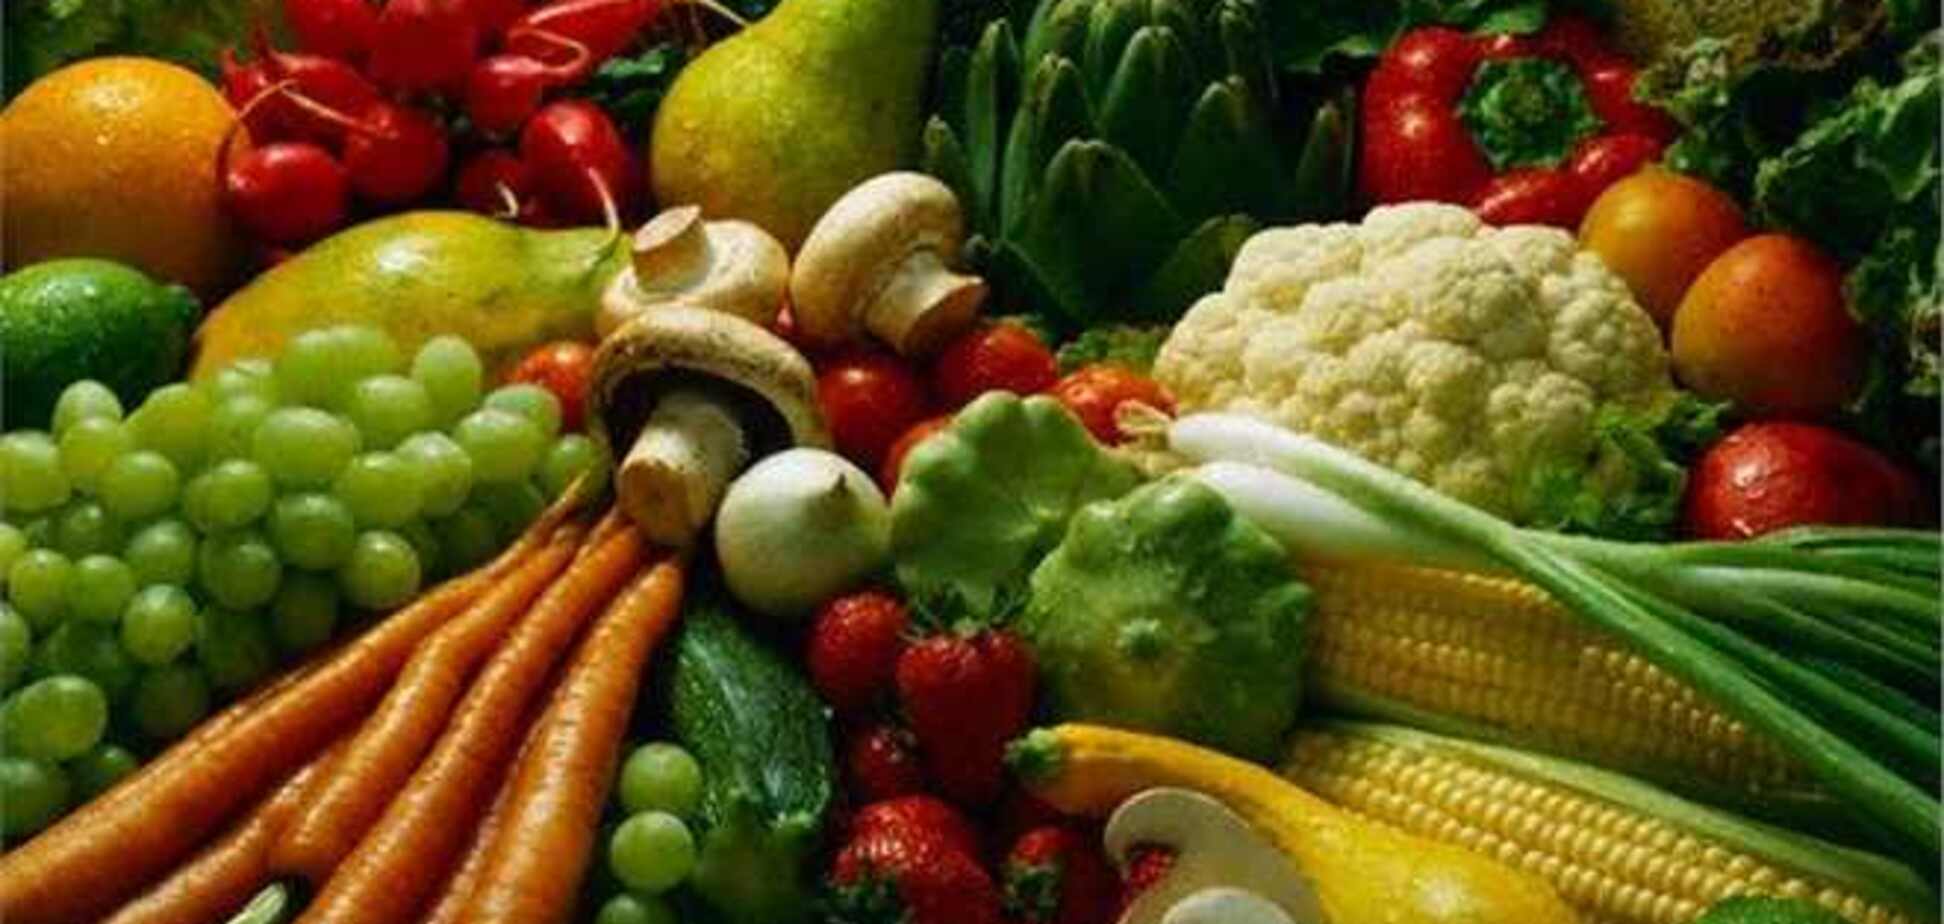 Украина может потерять $30 млн из-за блокирования Россией экспорта овощей и фруктов 